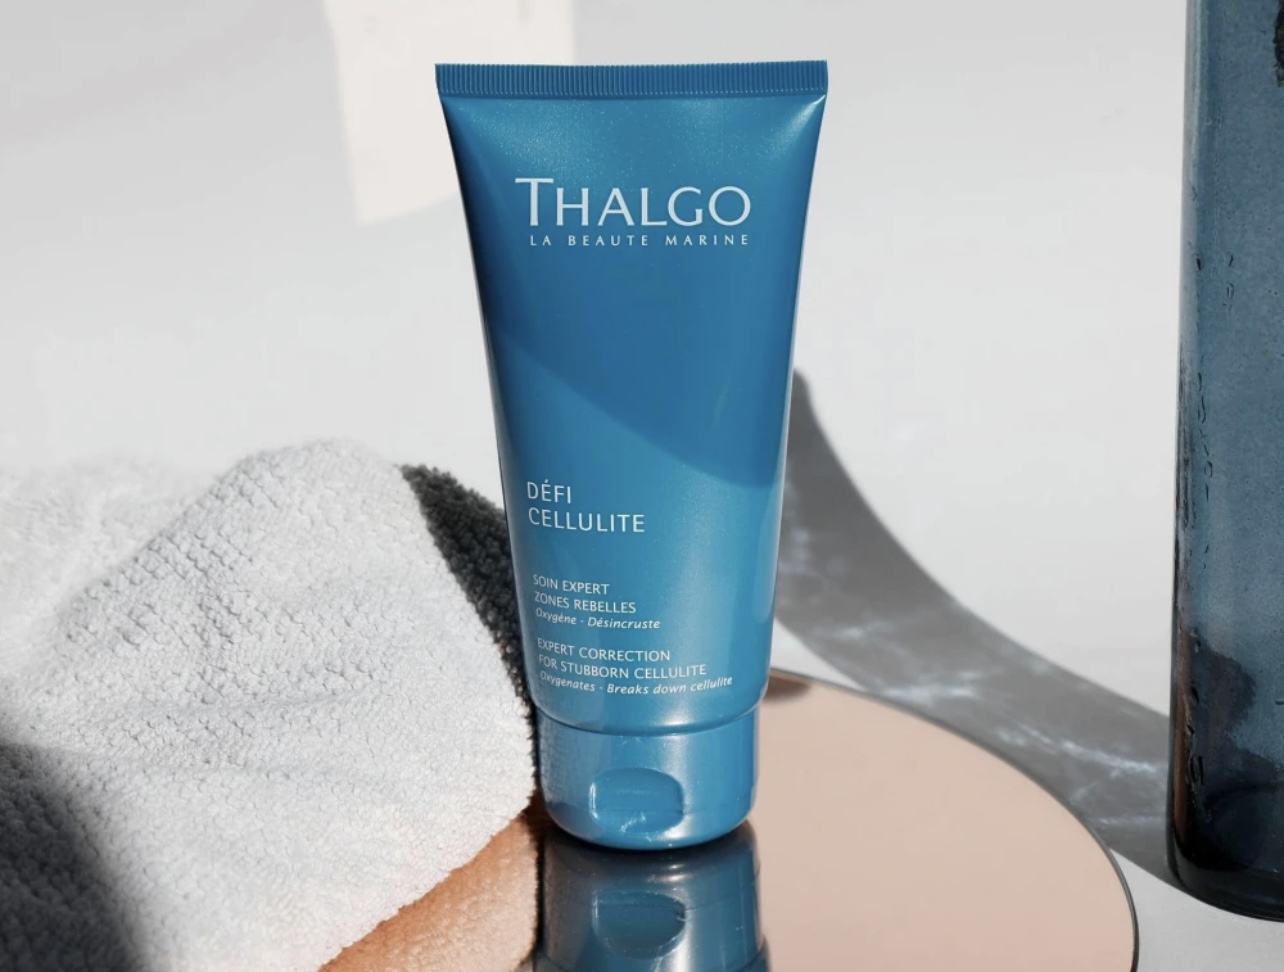 Thalgo - Експерт коректор стійкого целюліту Expert Correction for Stubborn Cellulite - Зображення 3